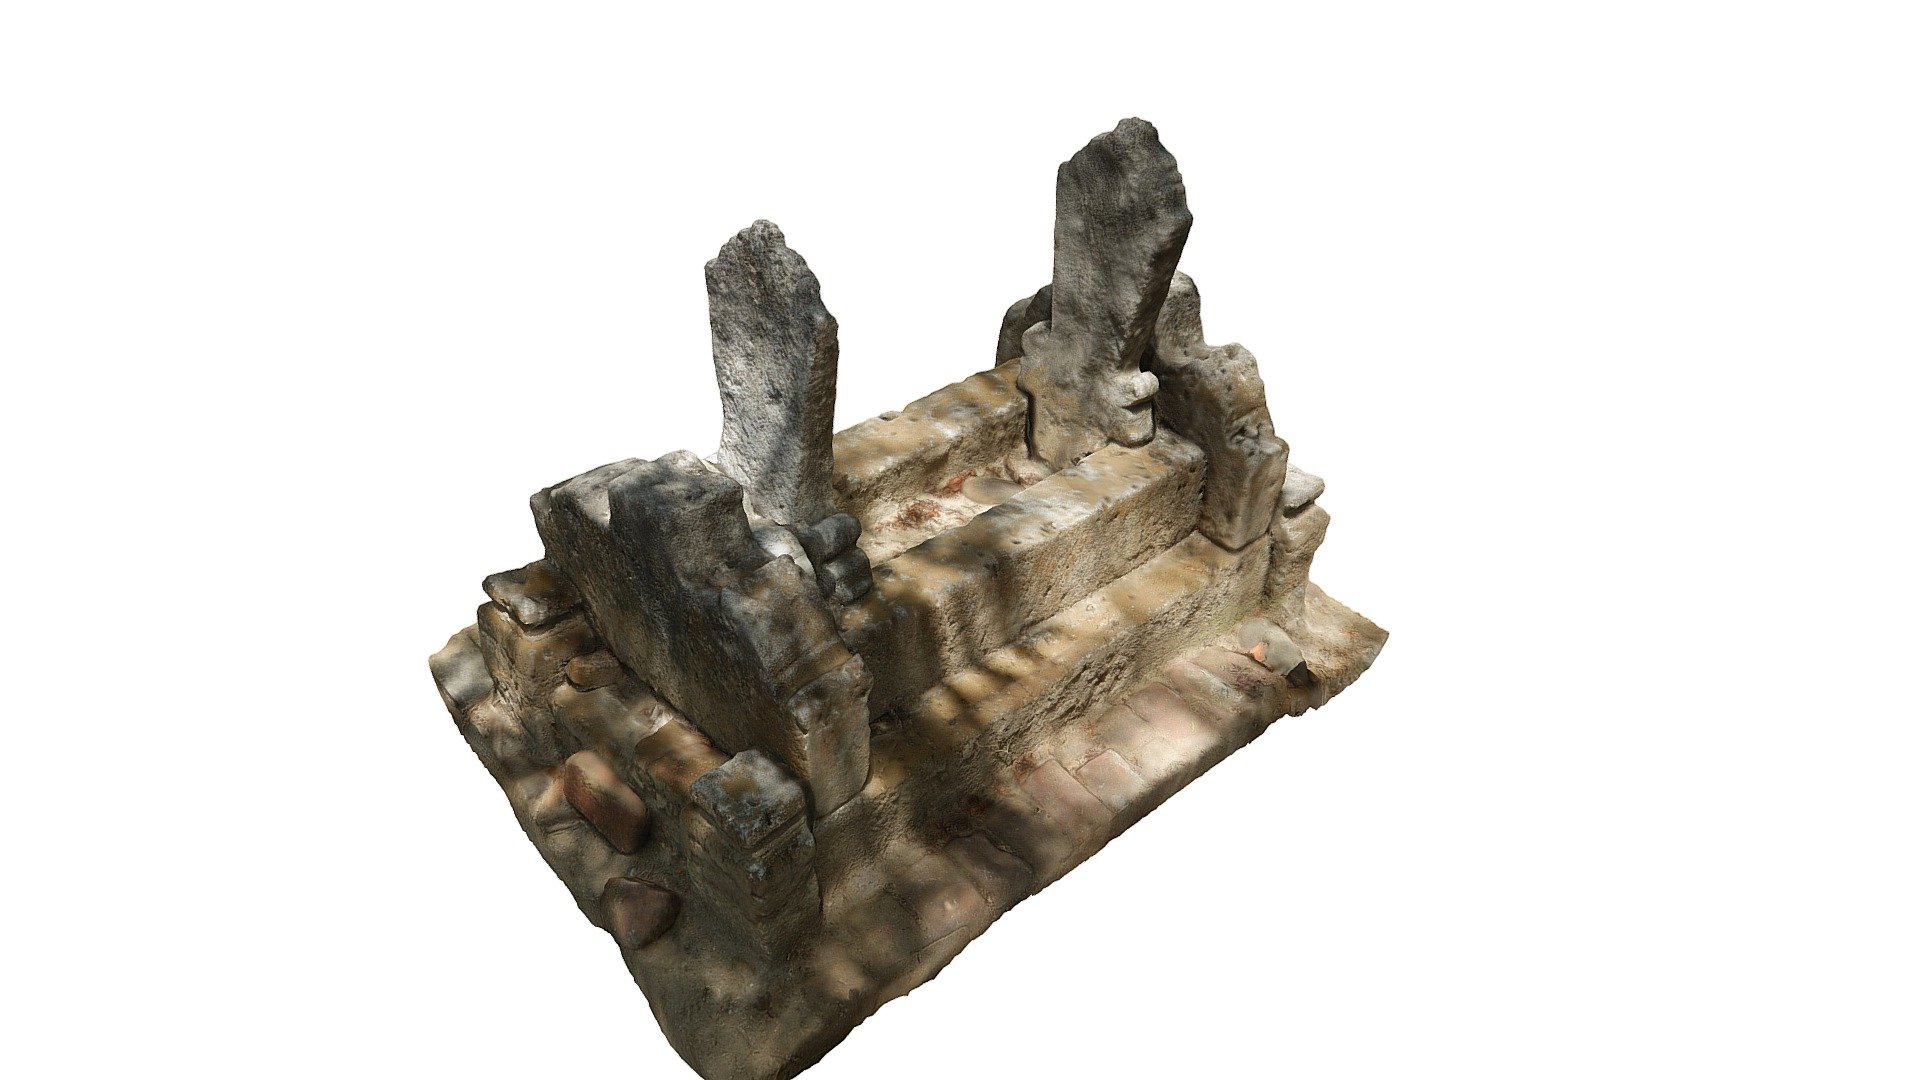 Situs Makam Kramat, Utan, Sumbawa, Indonesia - Makam Kramat, Object 2 - 3D model by Sumbawa Cultural Heritage (@sumbawa) 3d model